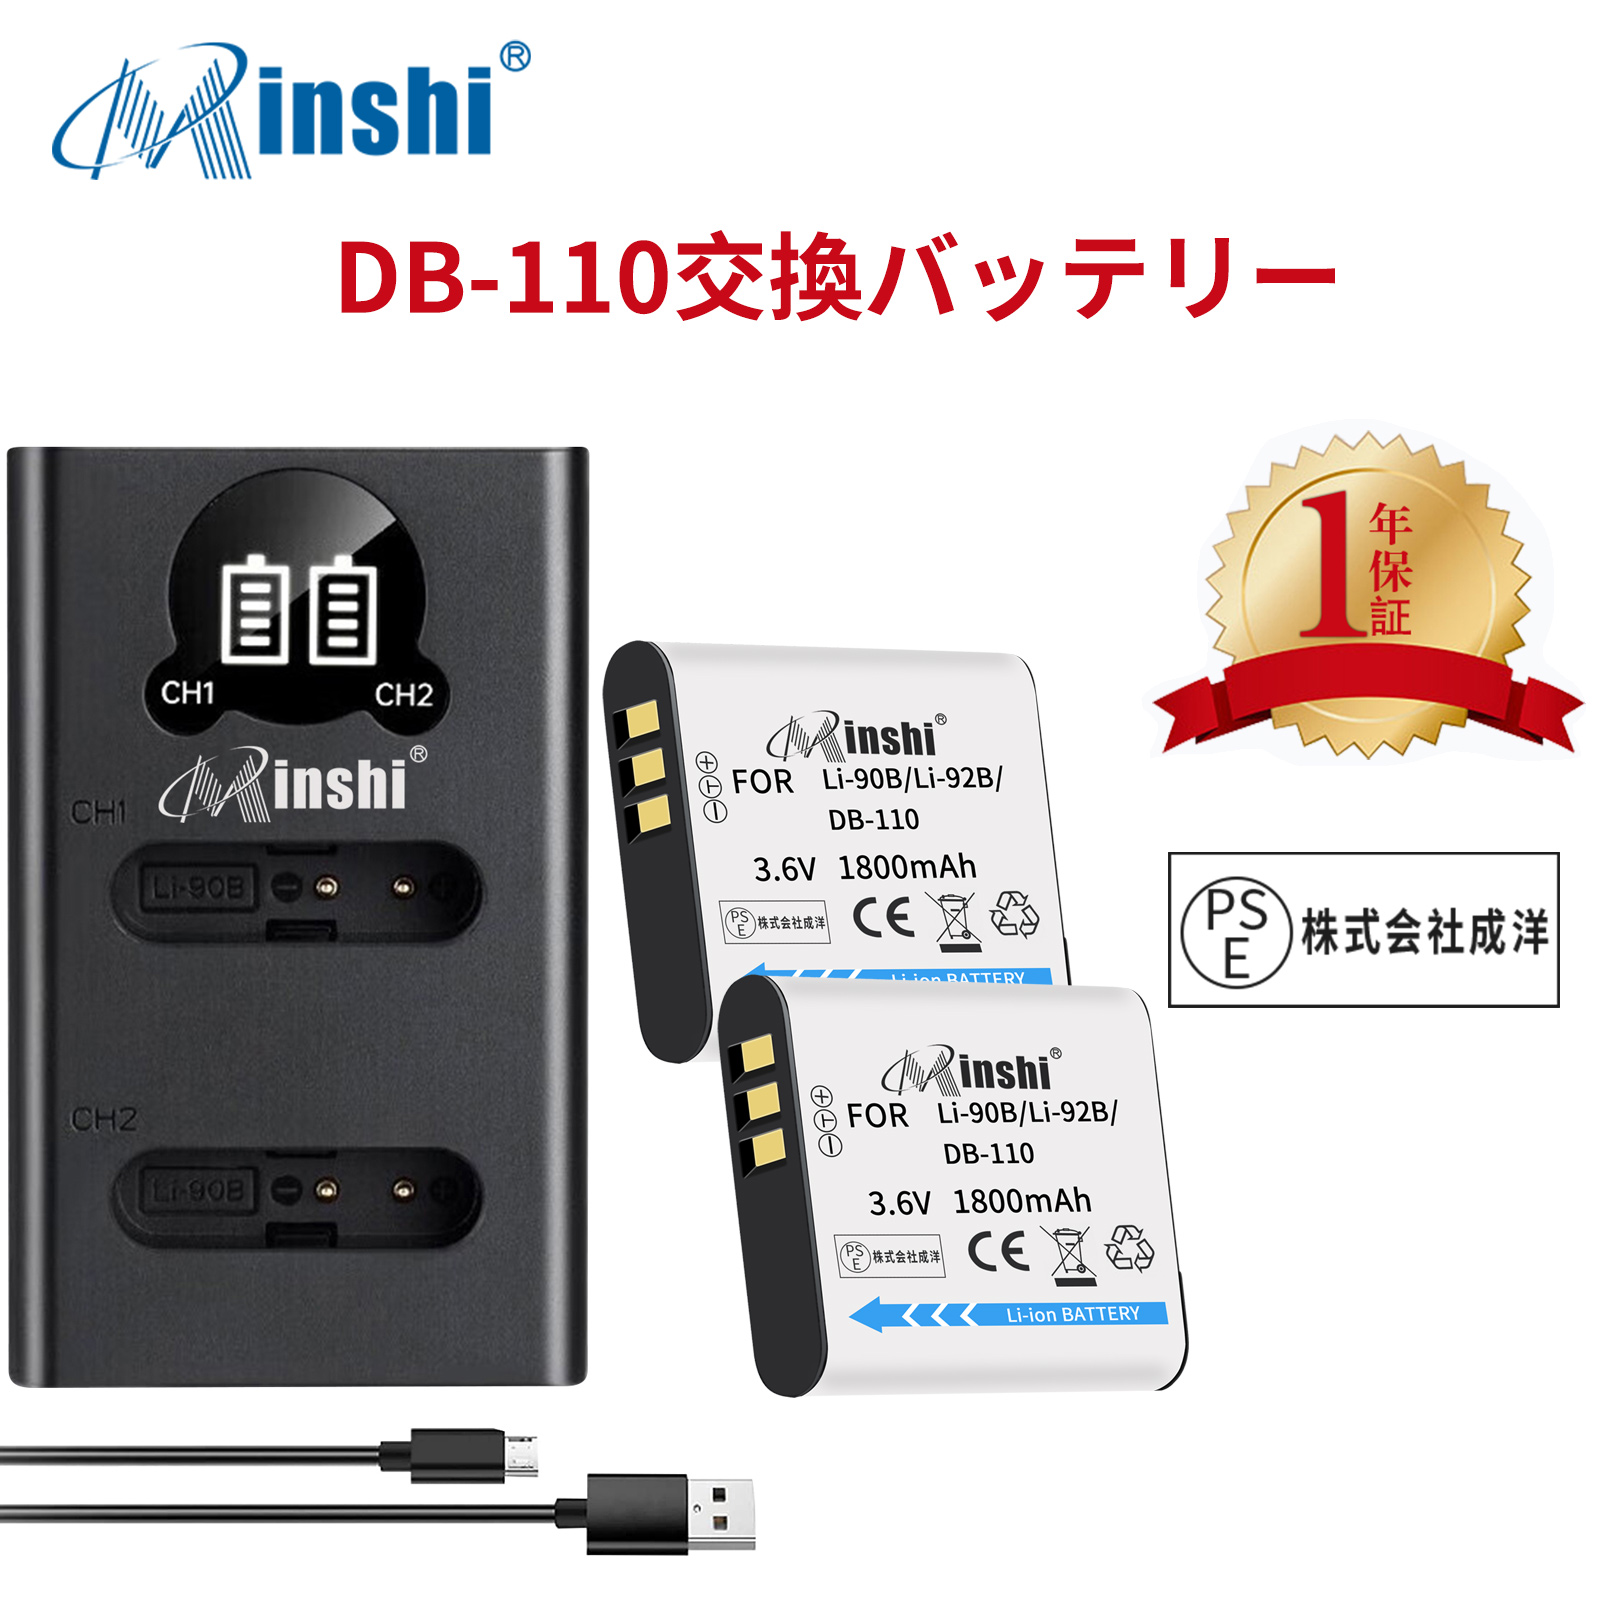 【２個セット】minshi OLYMPUS Stylus SH-1 【1800mAh 3.6V】【互換急速USBチャージャー】 高品質LI-92B互換バッテリーWHG